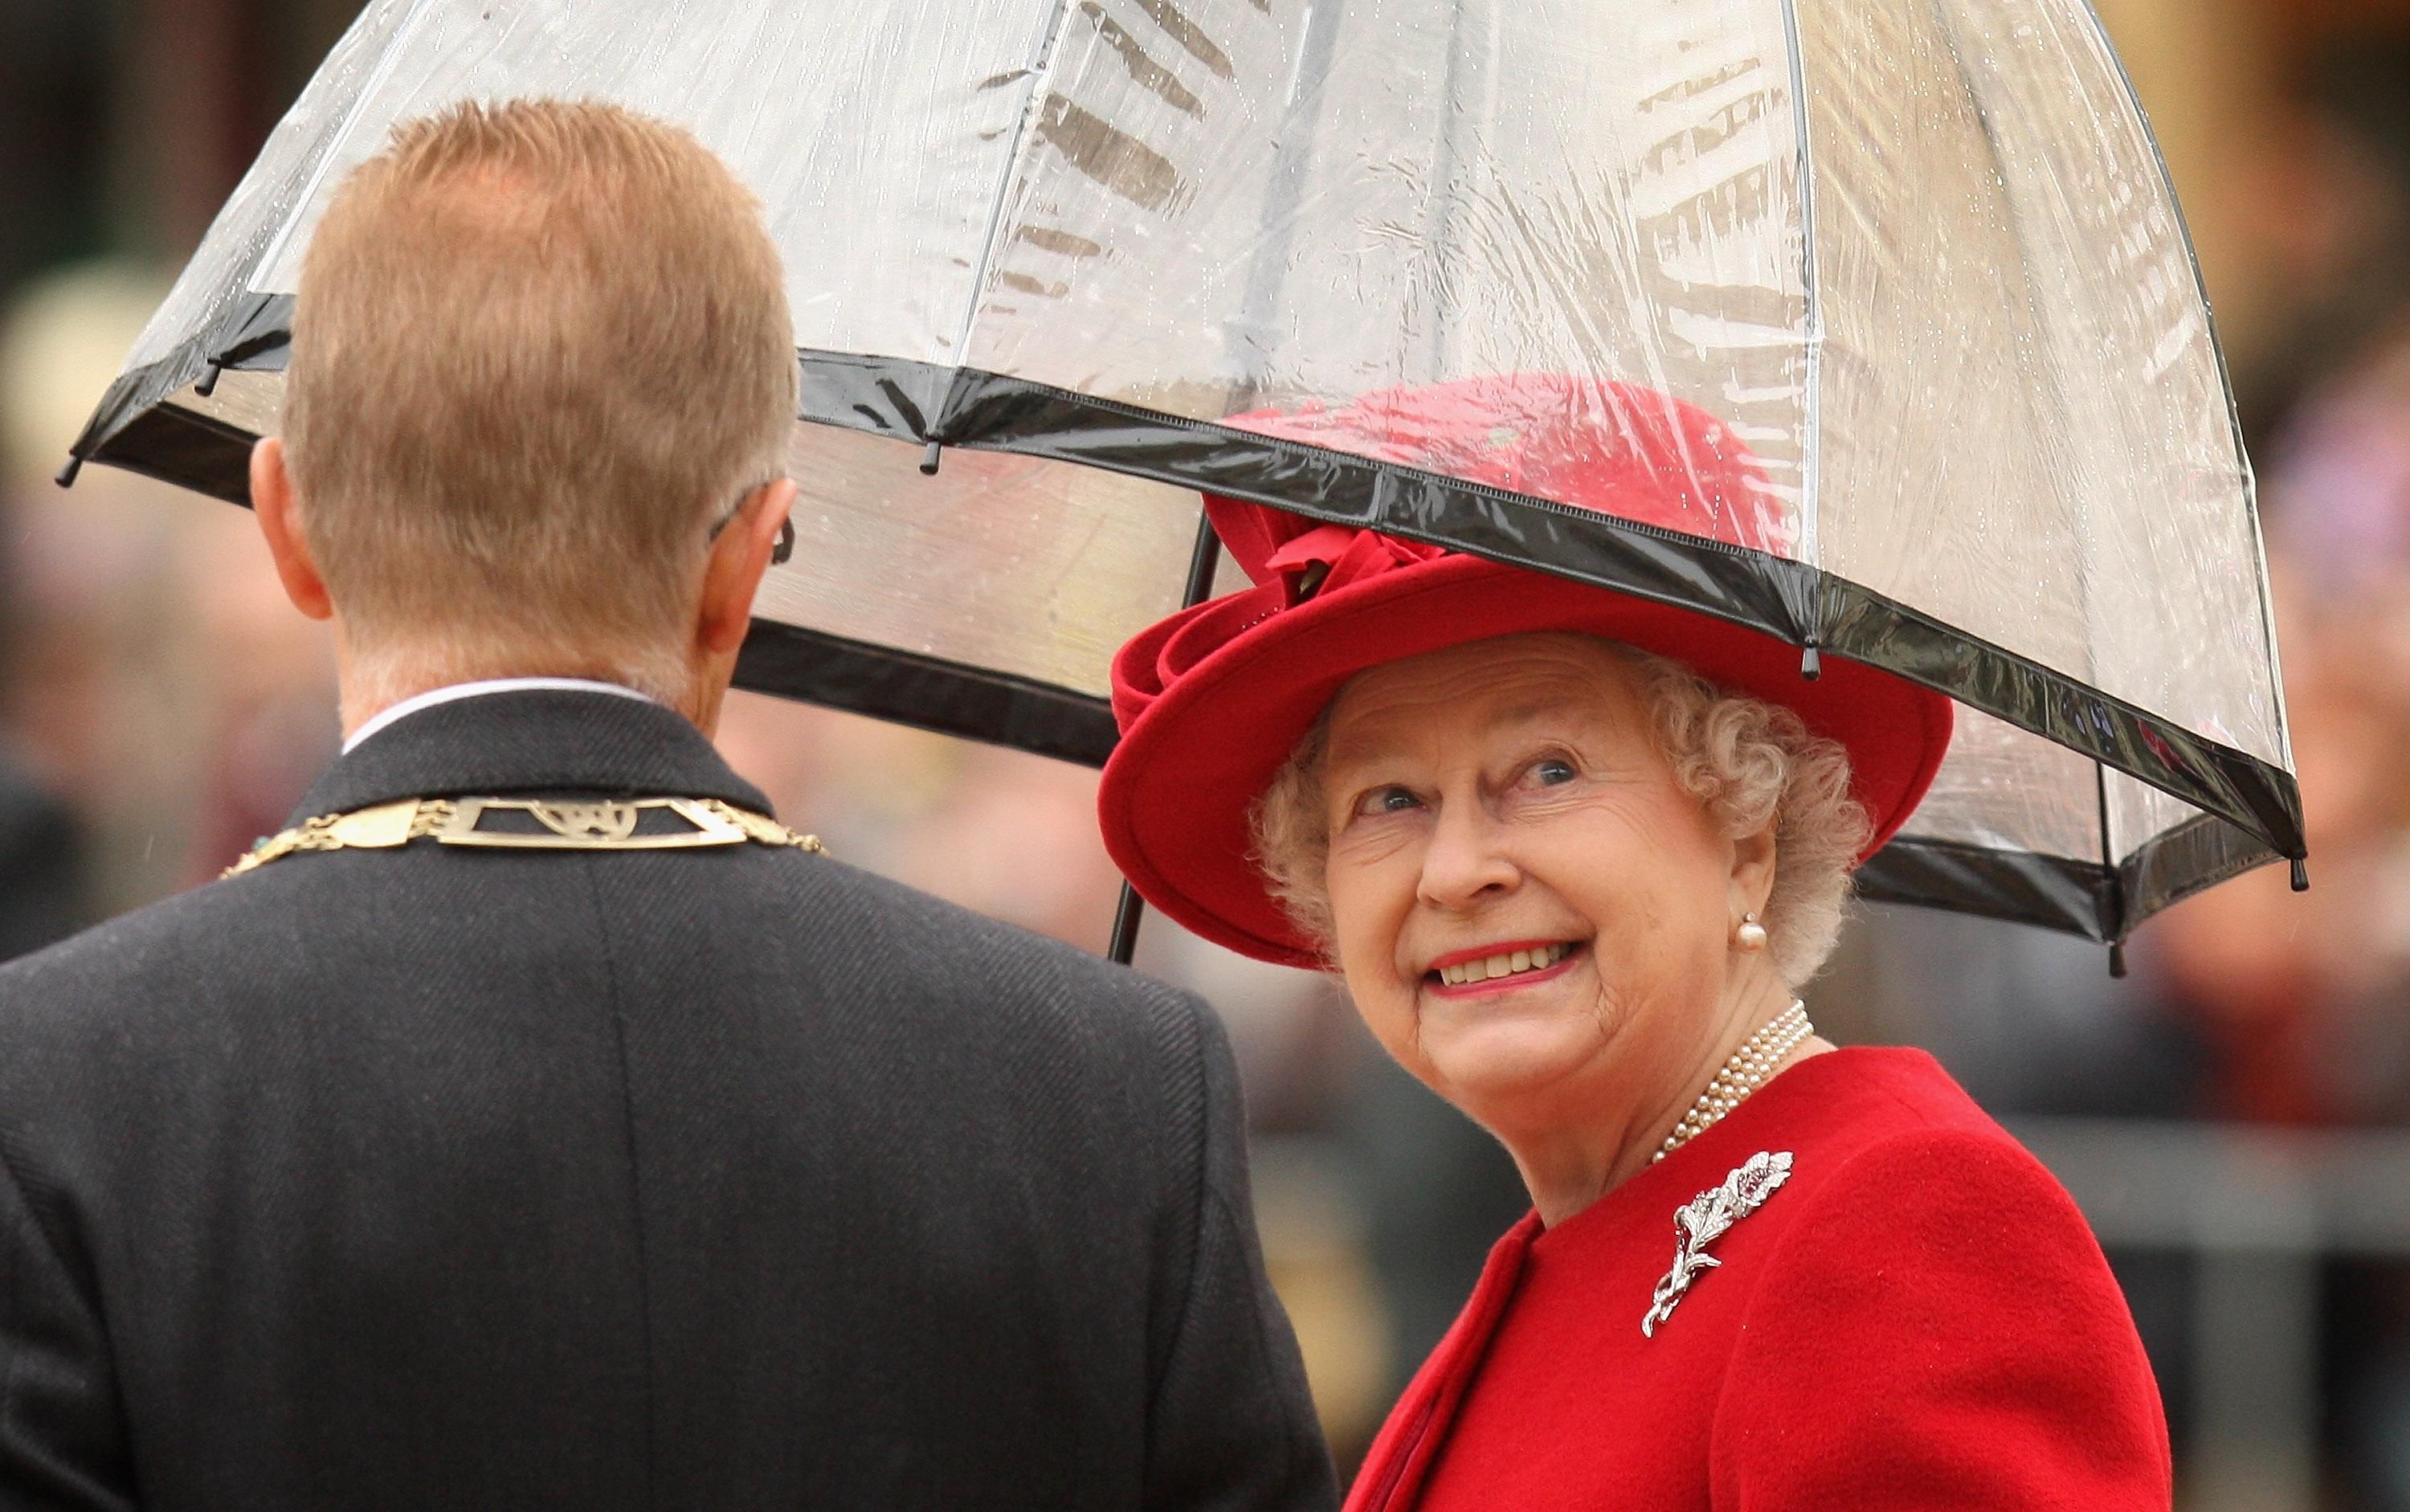 Єлизавета II отримає капелюх від дизайнера Багінського - як він виглядає, фото